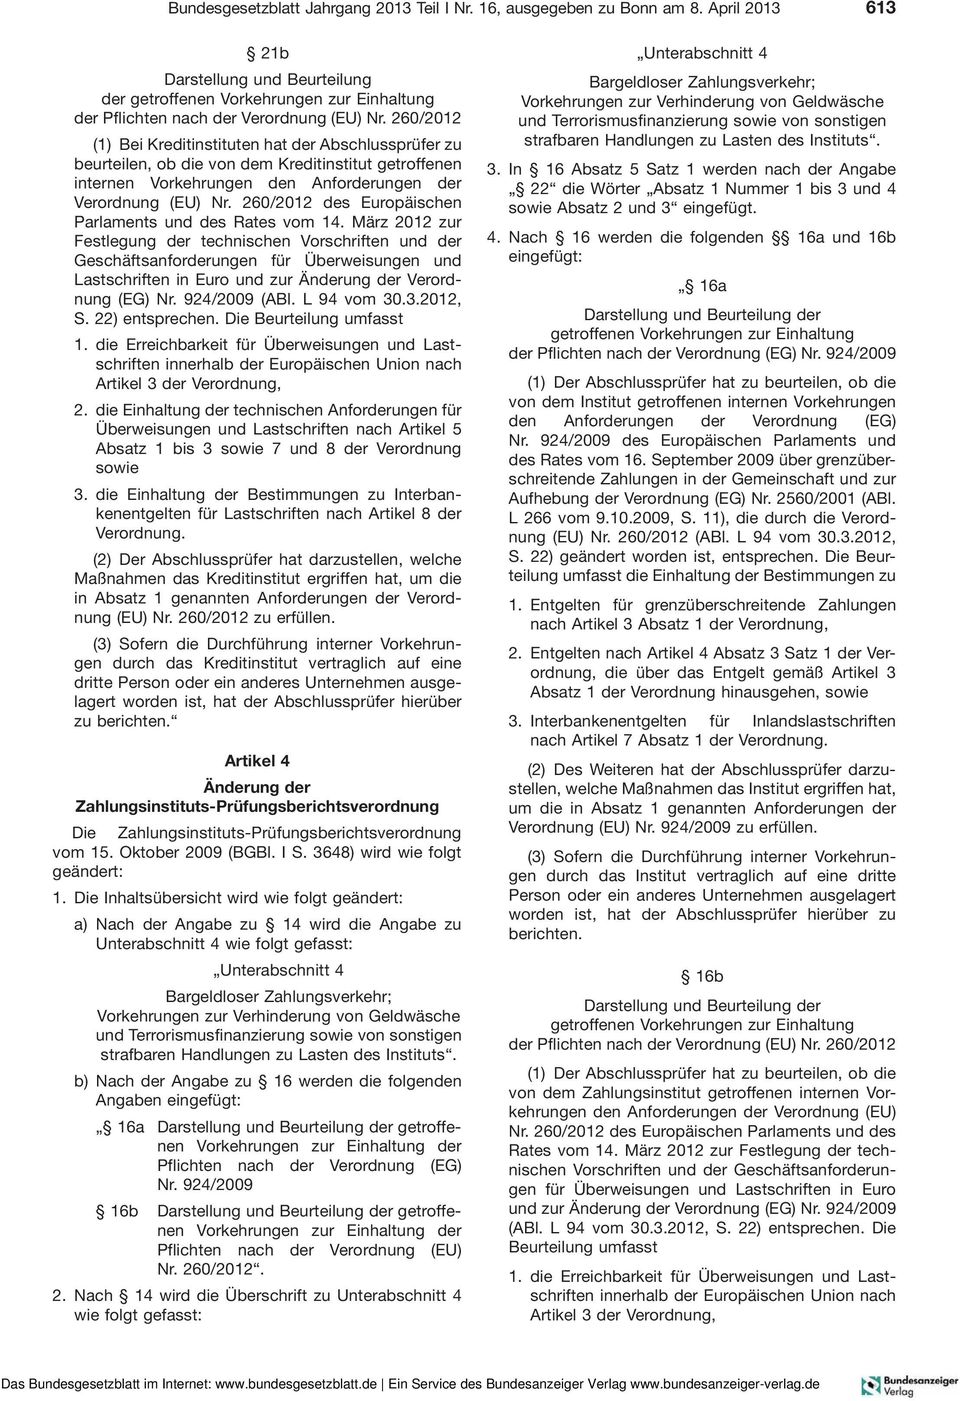 260/2012 (1) Bei Kreditinstituten hat der Abschlussprüfer zu beurteilen, ob die von dem Kreditinstitut getroffenen internen Vorkehrungen den Anforderungen der Verordnung (EU) Nr.